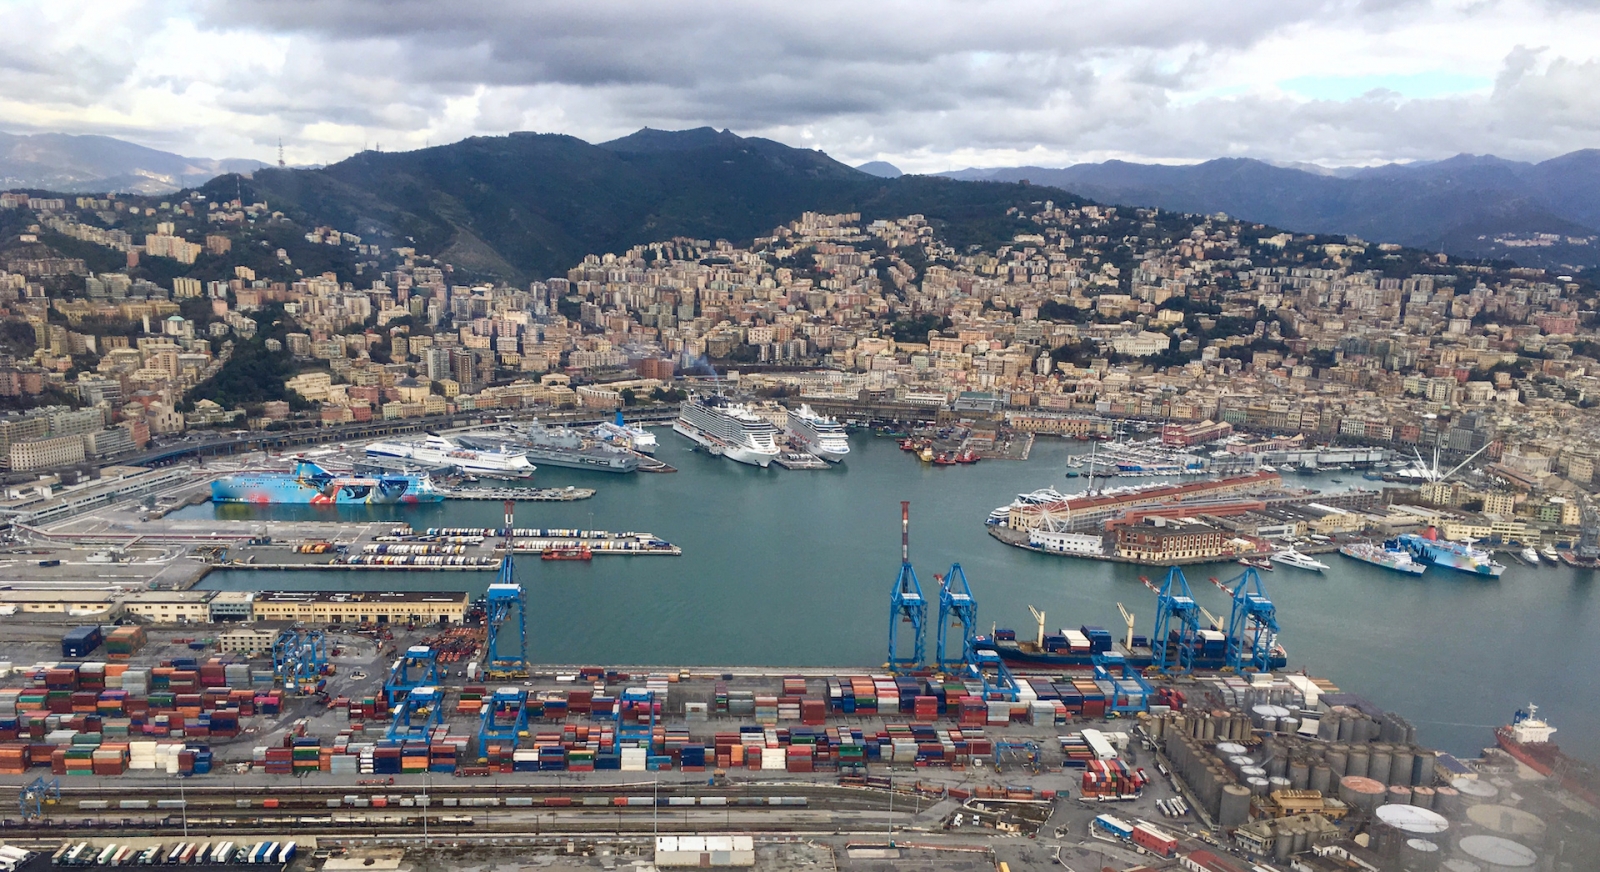 Vista drone Vista aerea vista panoramica di Genova in Italia con porto, navi da crociera, container e navi da carico e copia dello skyline